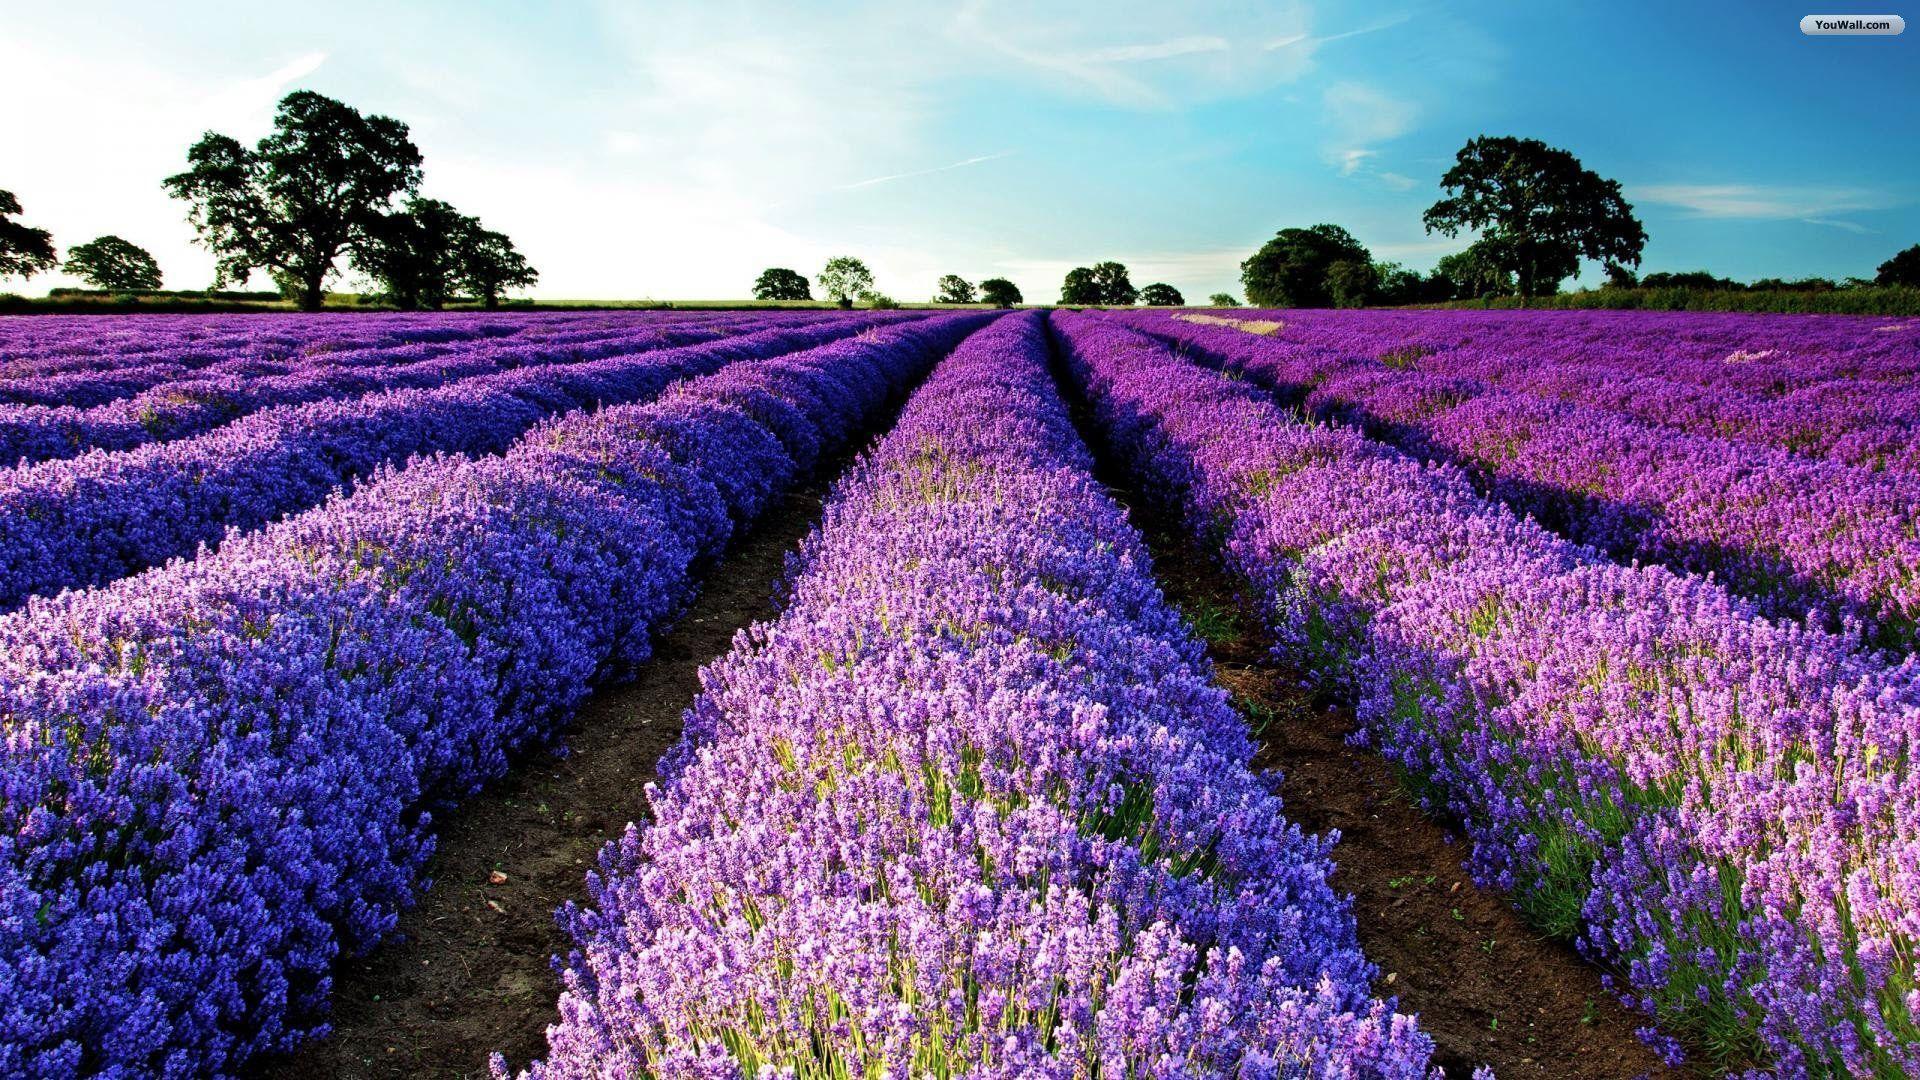 Purple flower field wallpaper 0x0 px - Purple flower